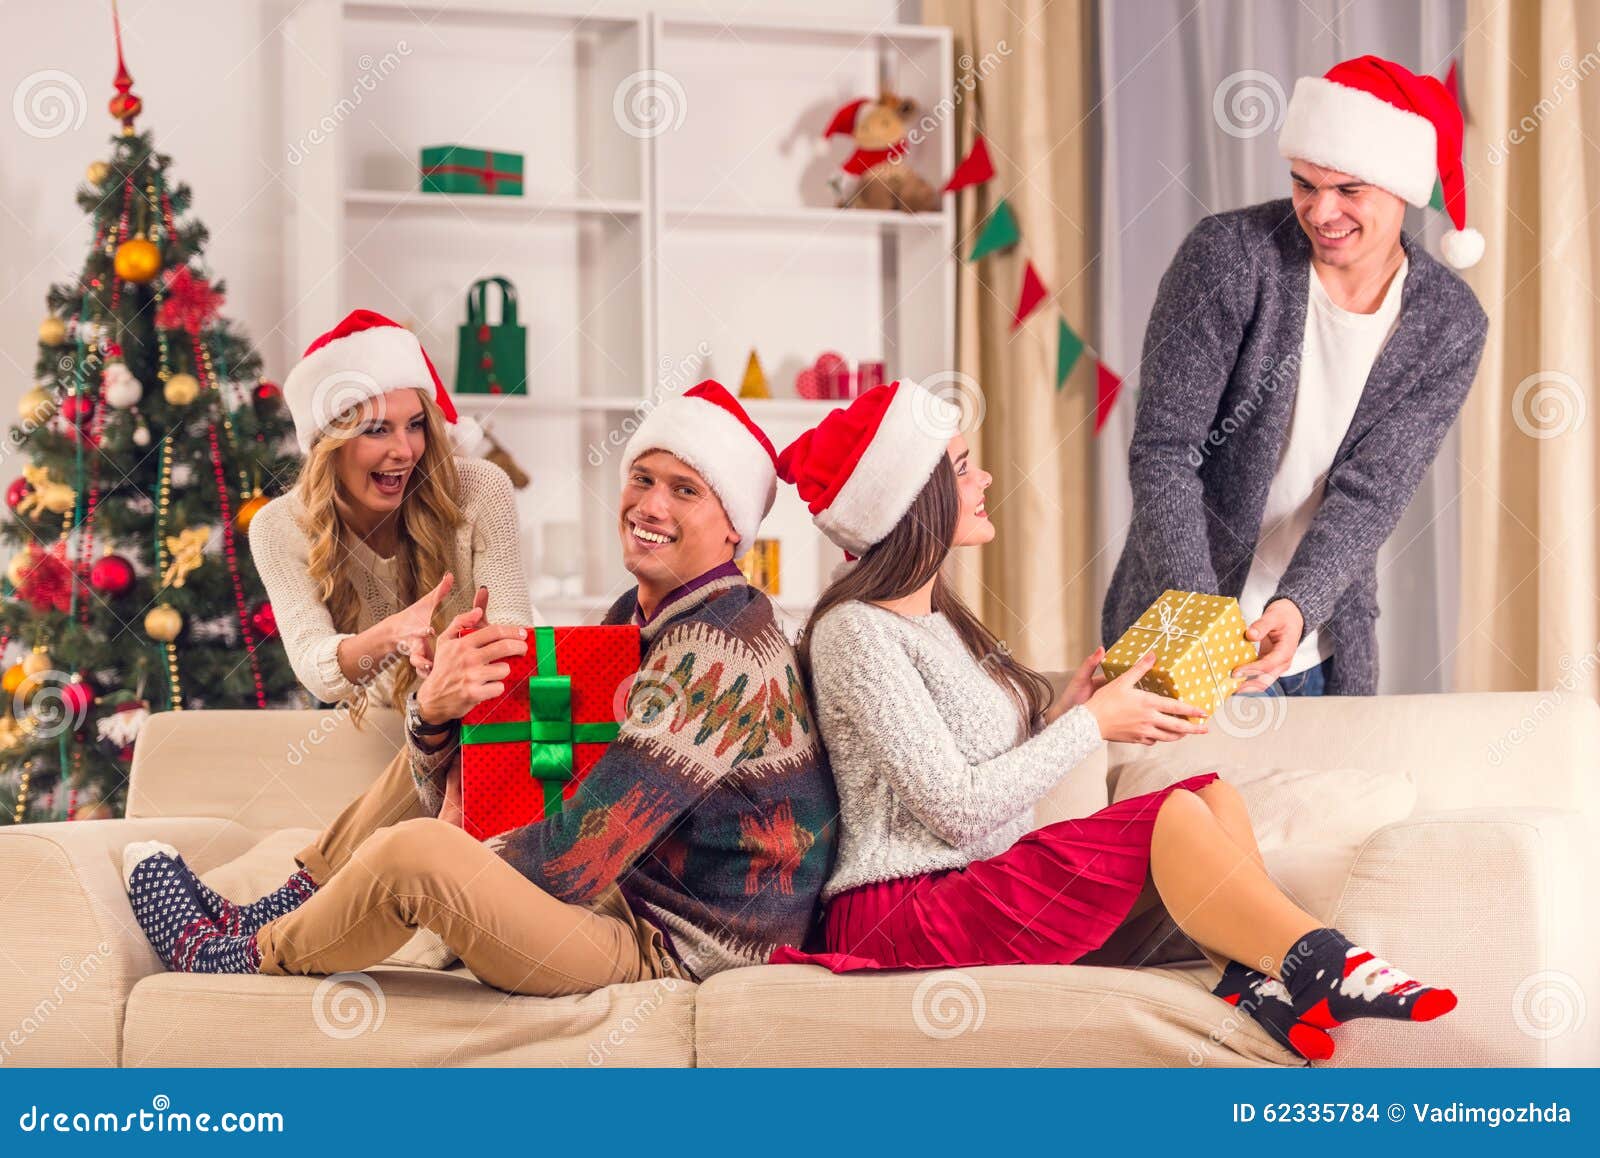 Buon Natale Dai Ragazzi Di Amici.Celebrazione Di Buon Natale Fotografia Stock Immagine Di Natale Gioia 62335784